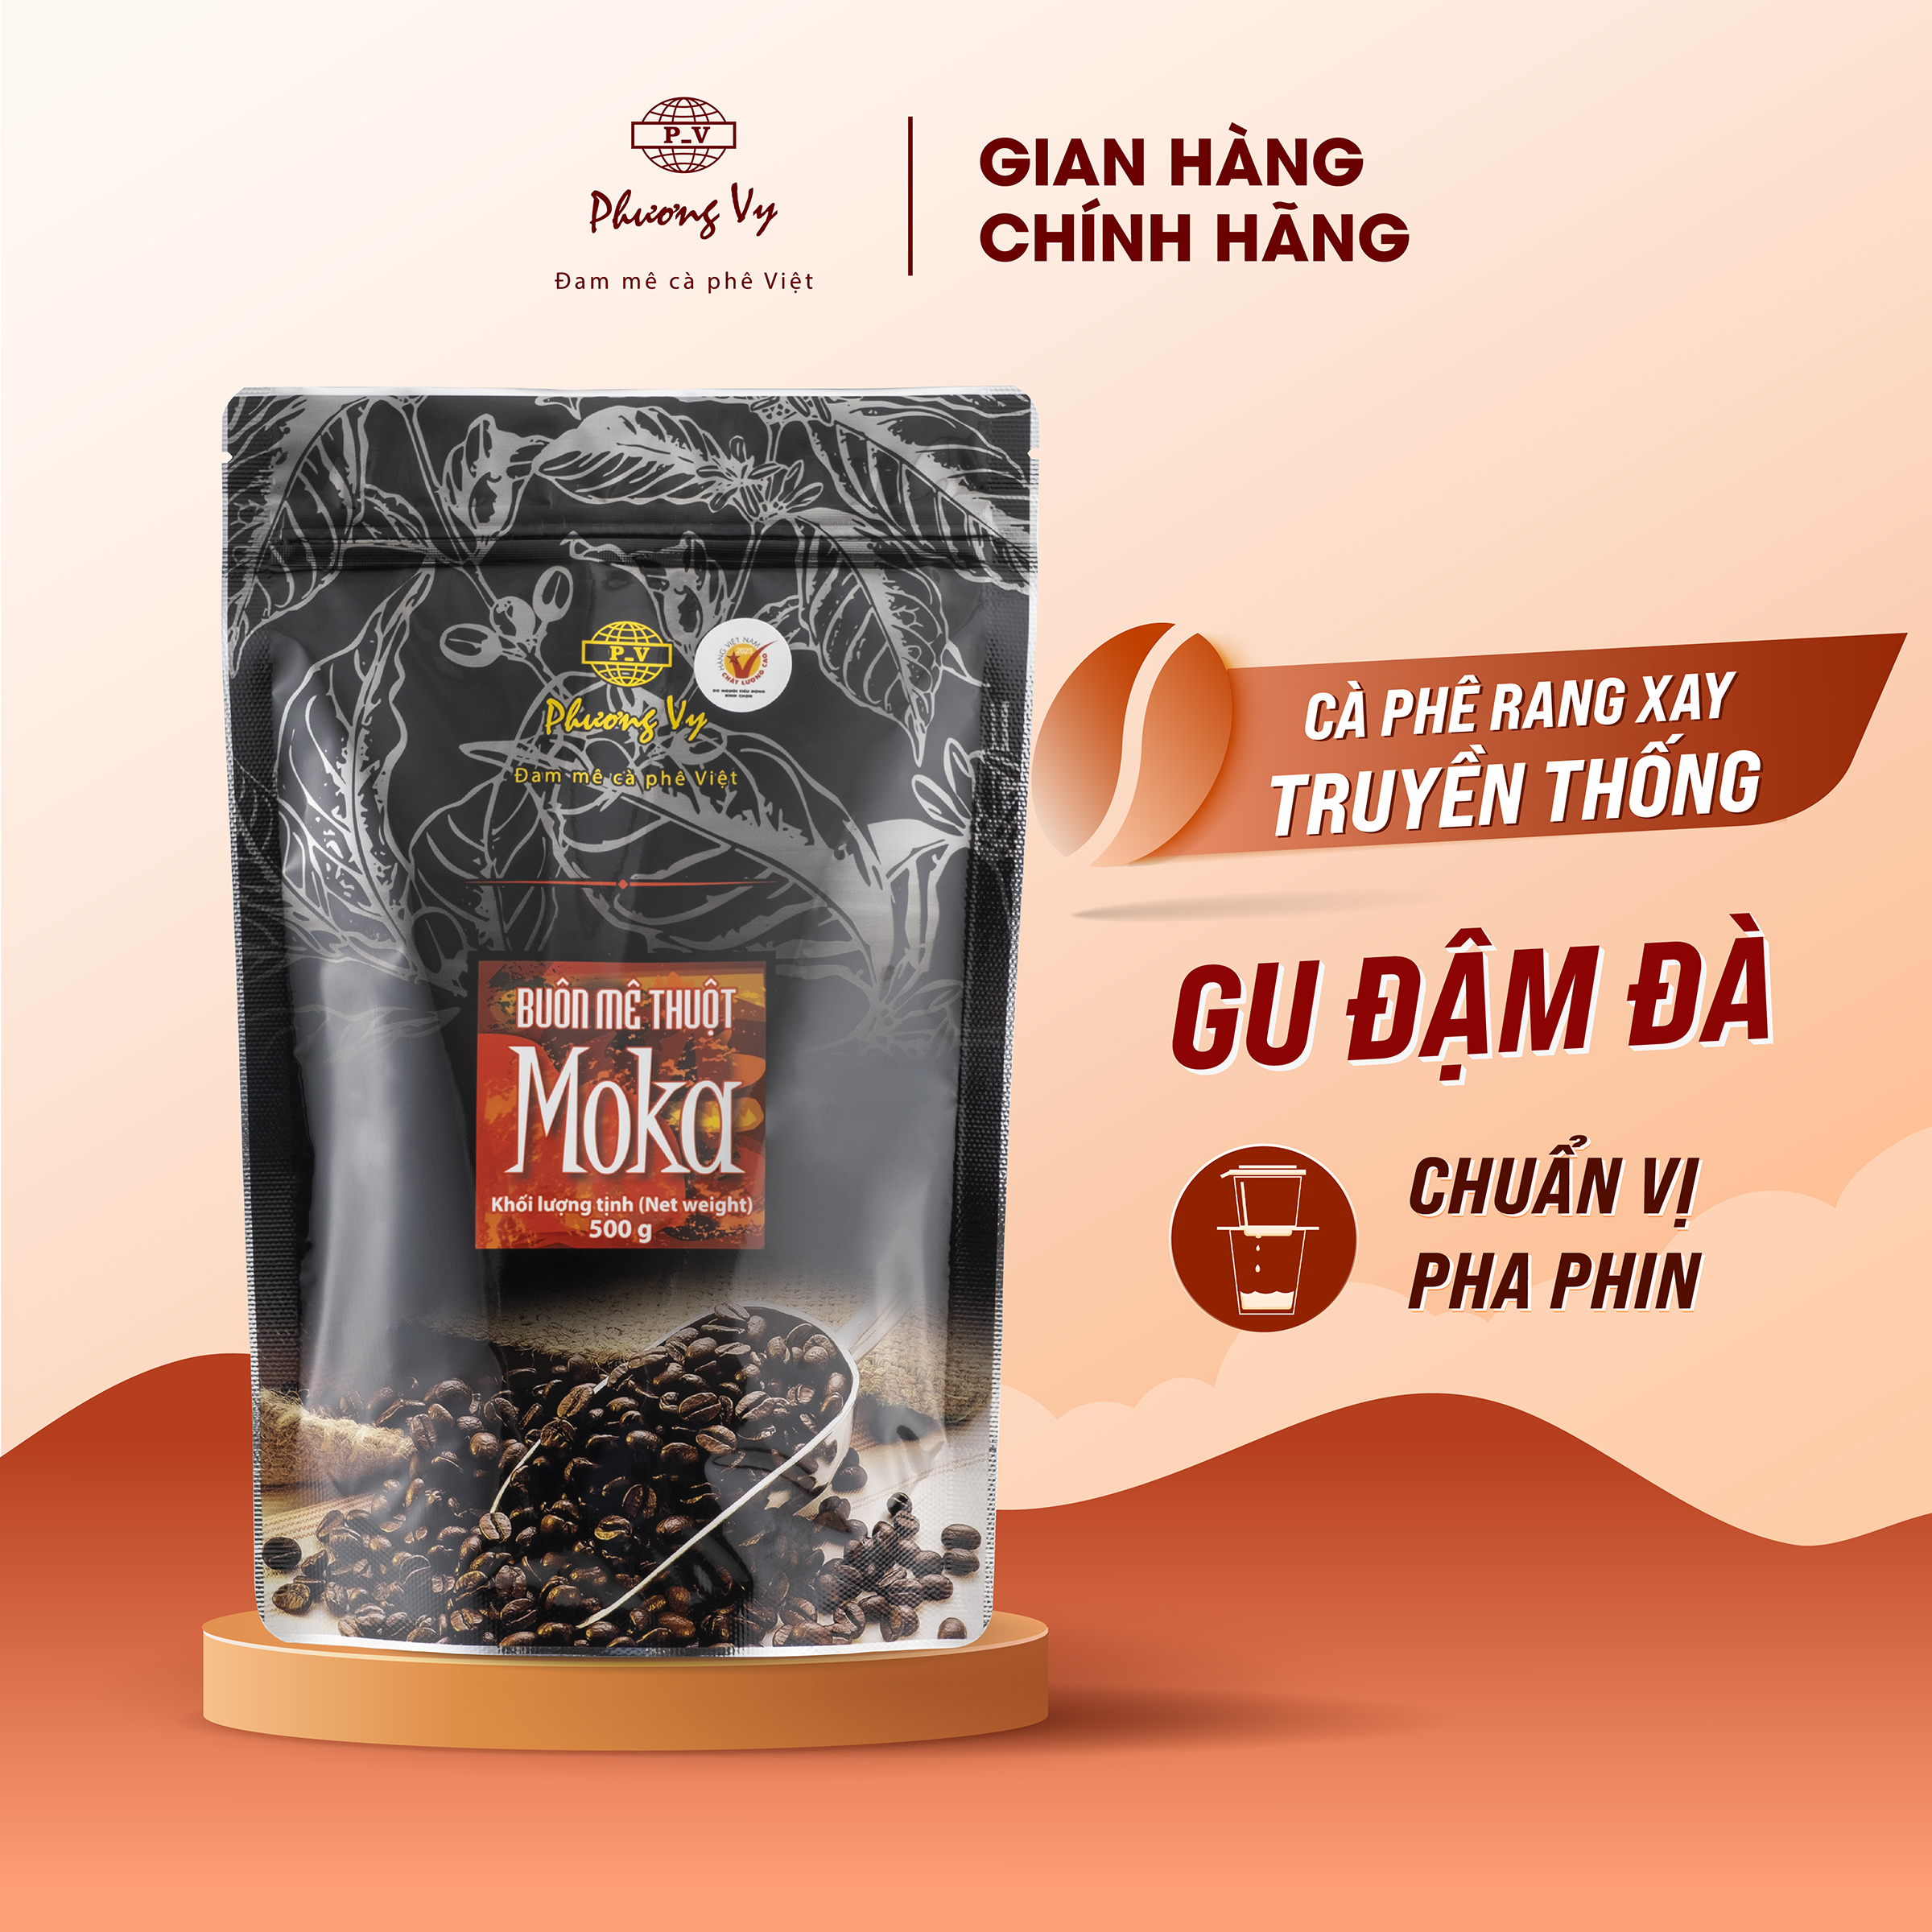 Buôn Mê Thuột Moka 500g - Phương Vy Coffee